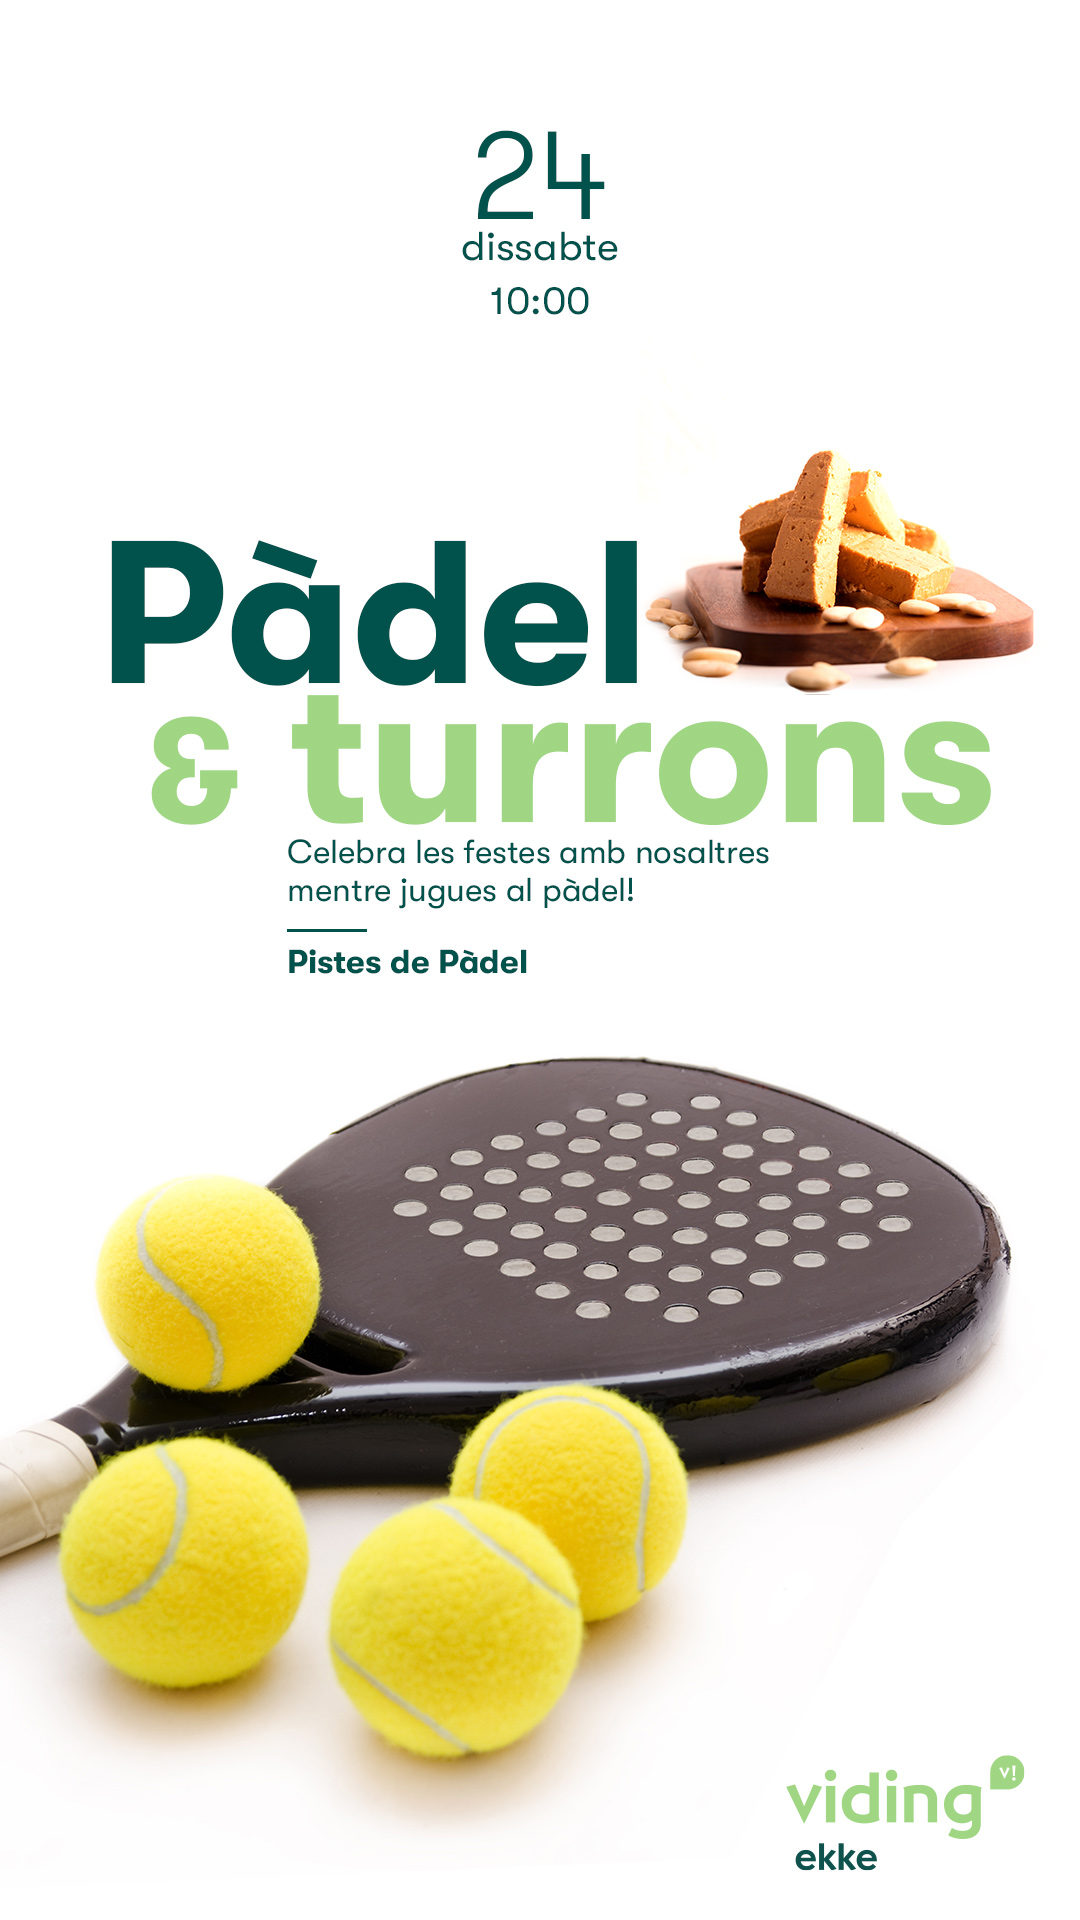 PADEL & TURRONES